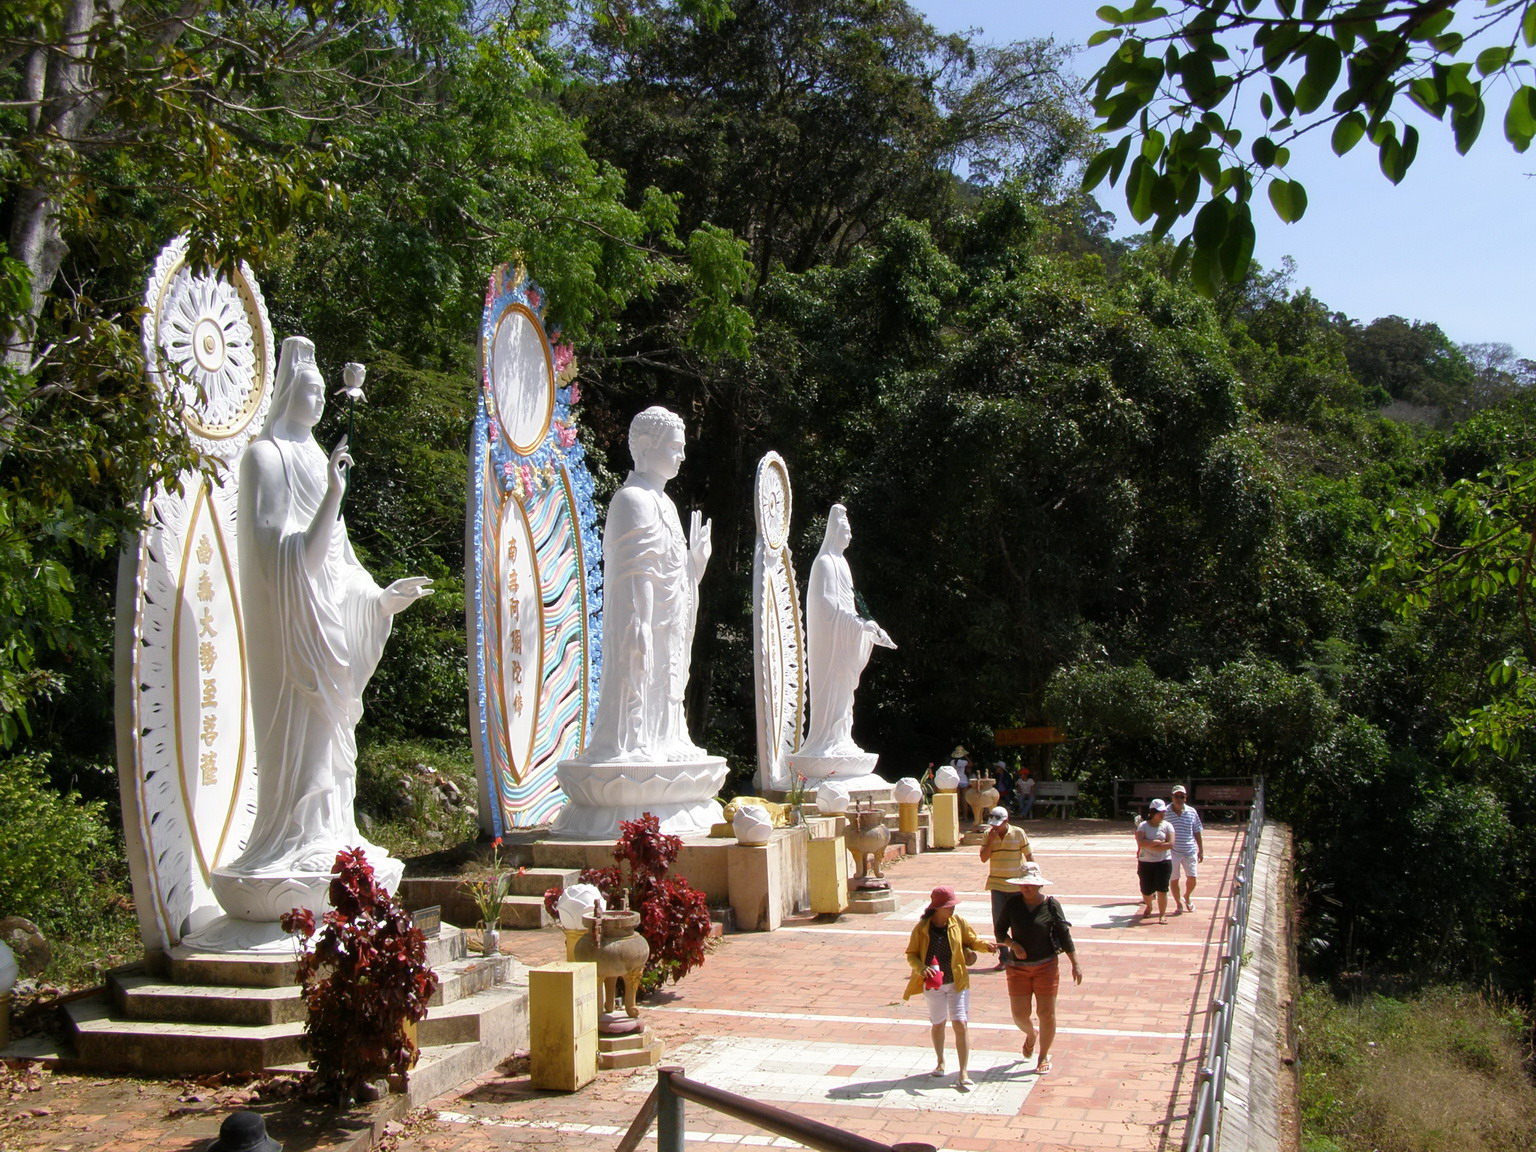 Đây là điểm đến tâm linh khi du lịch đến Phan Thiết (Nguồn: 1001hotel.com.vn)